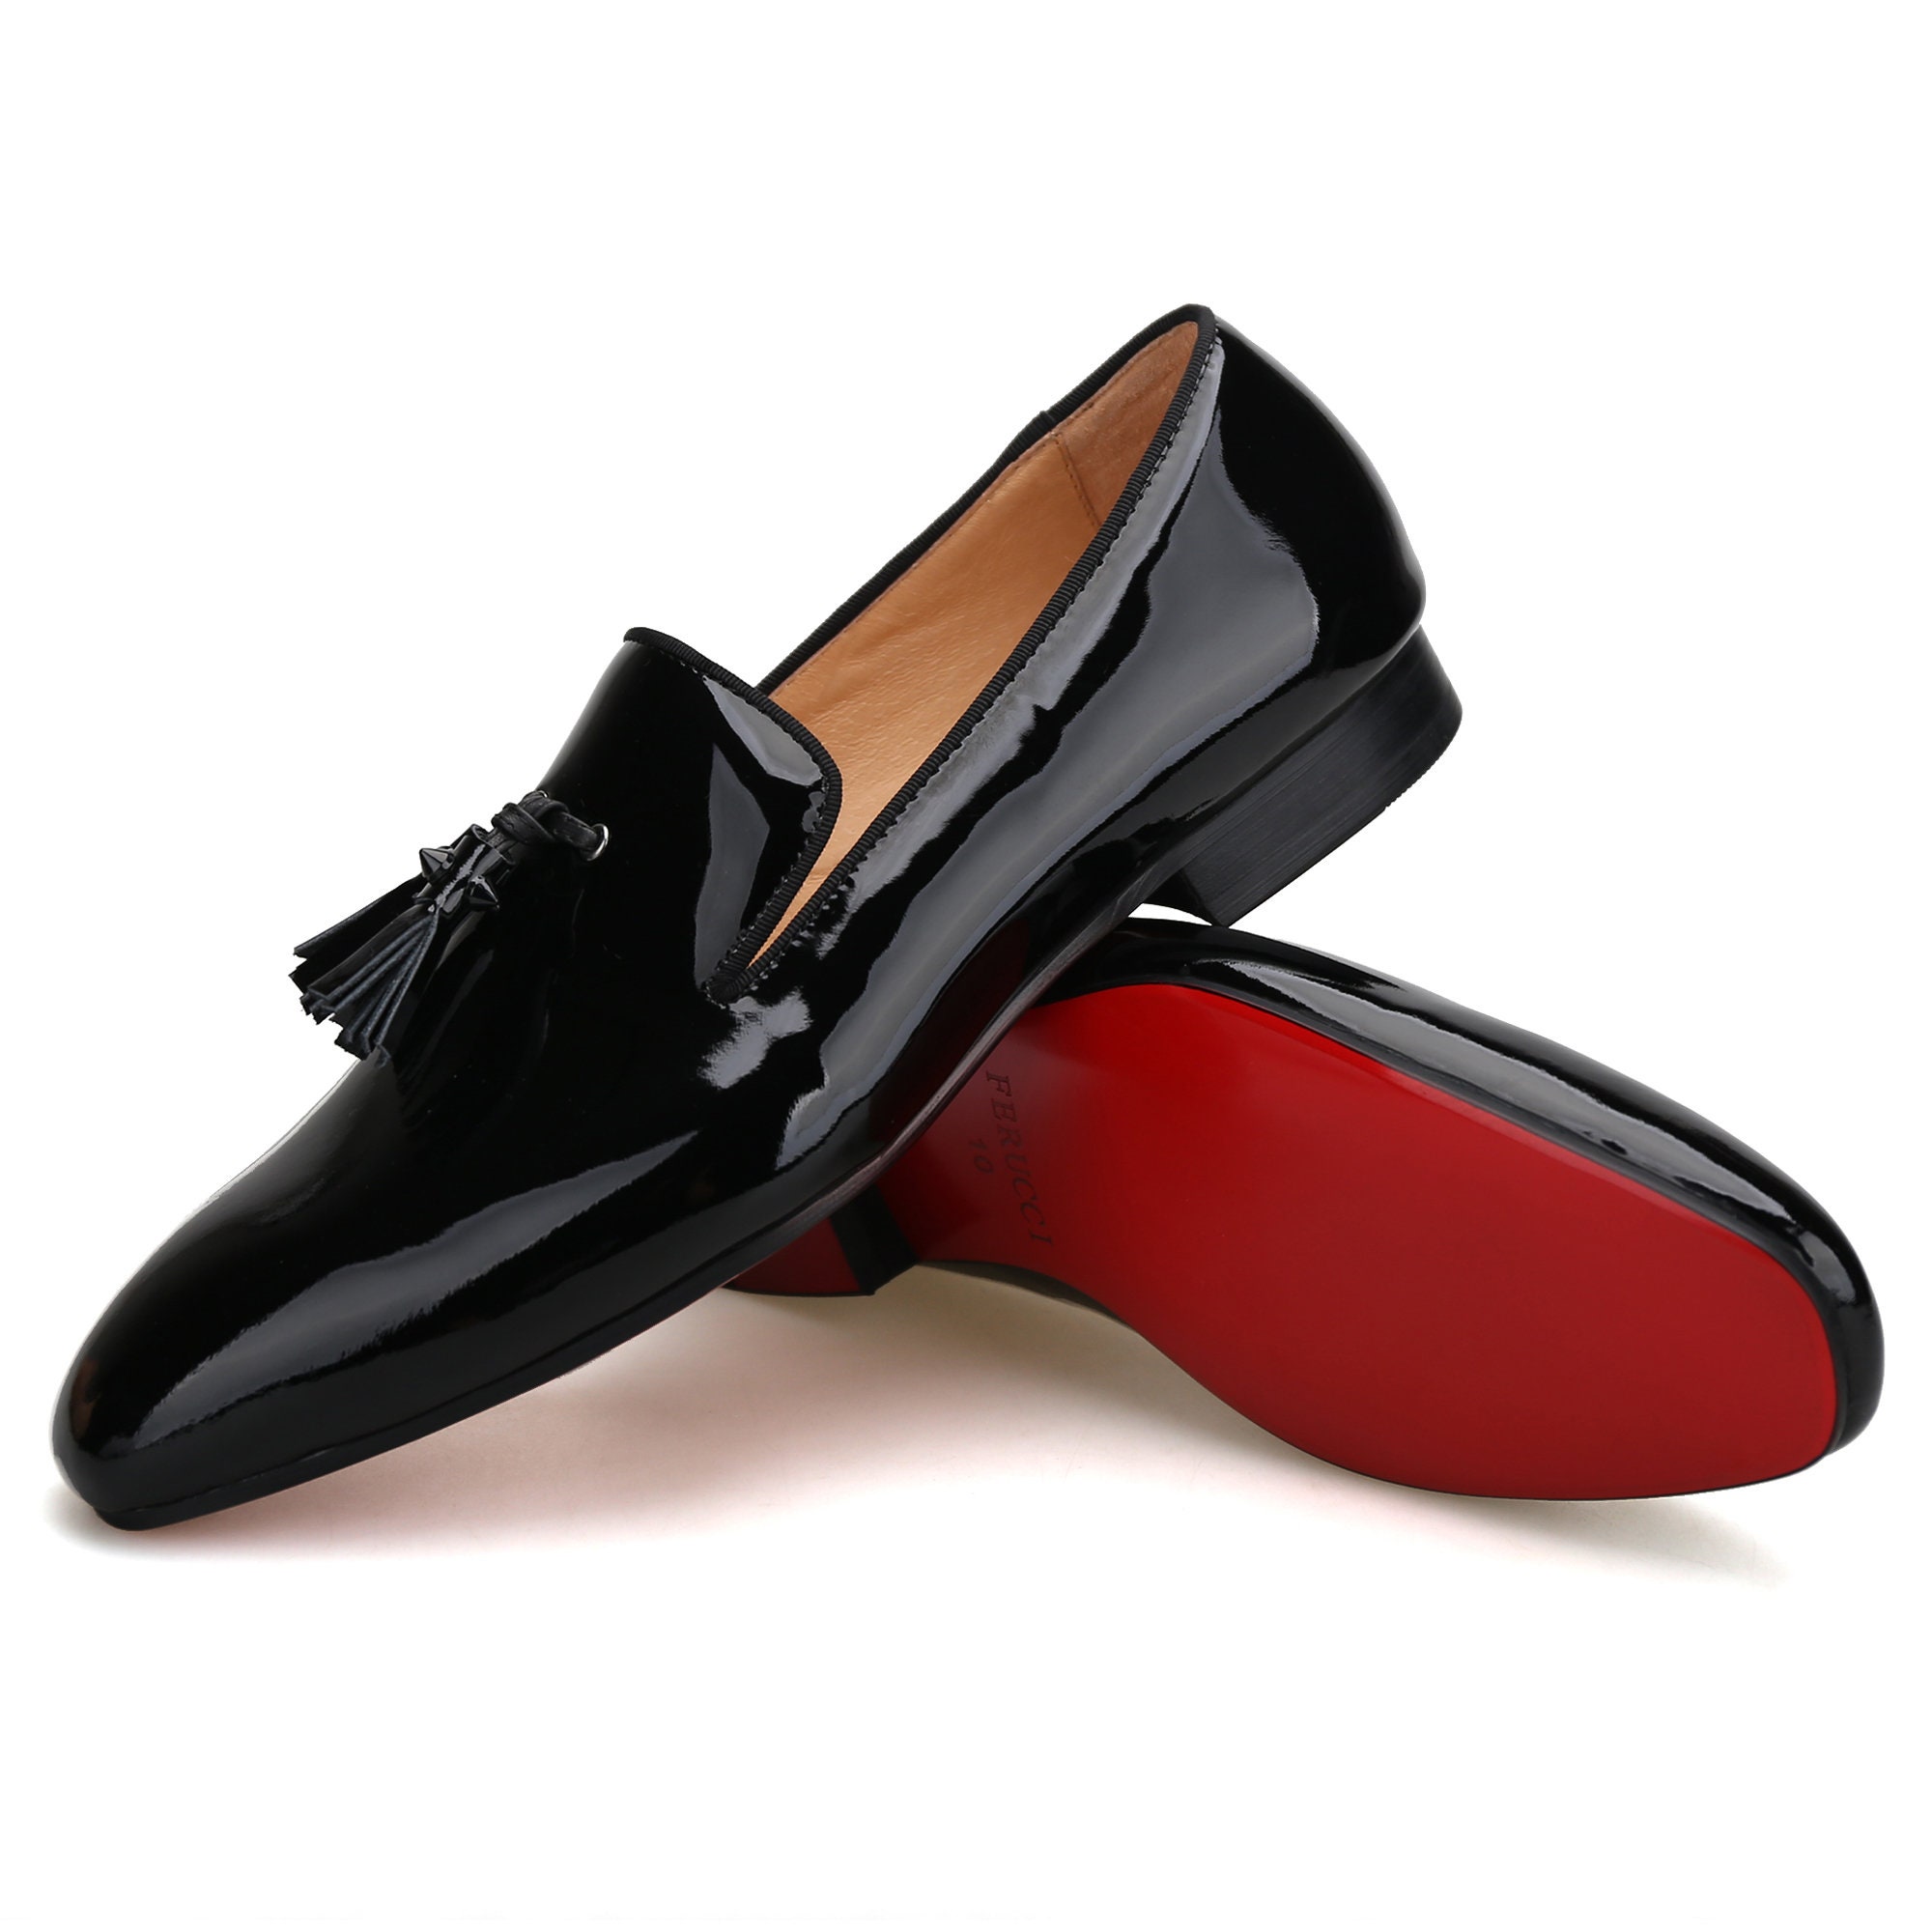 17 Replica red bottom shoes for men ideas